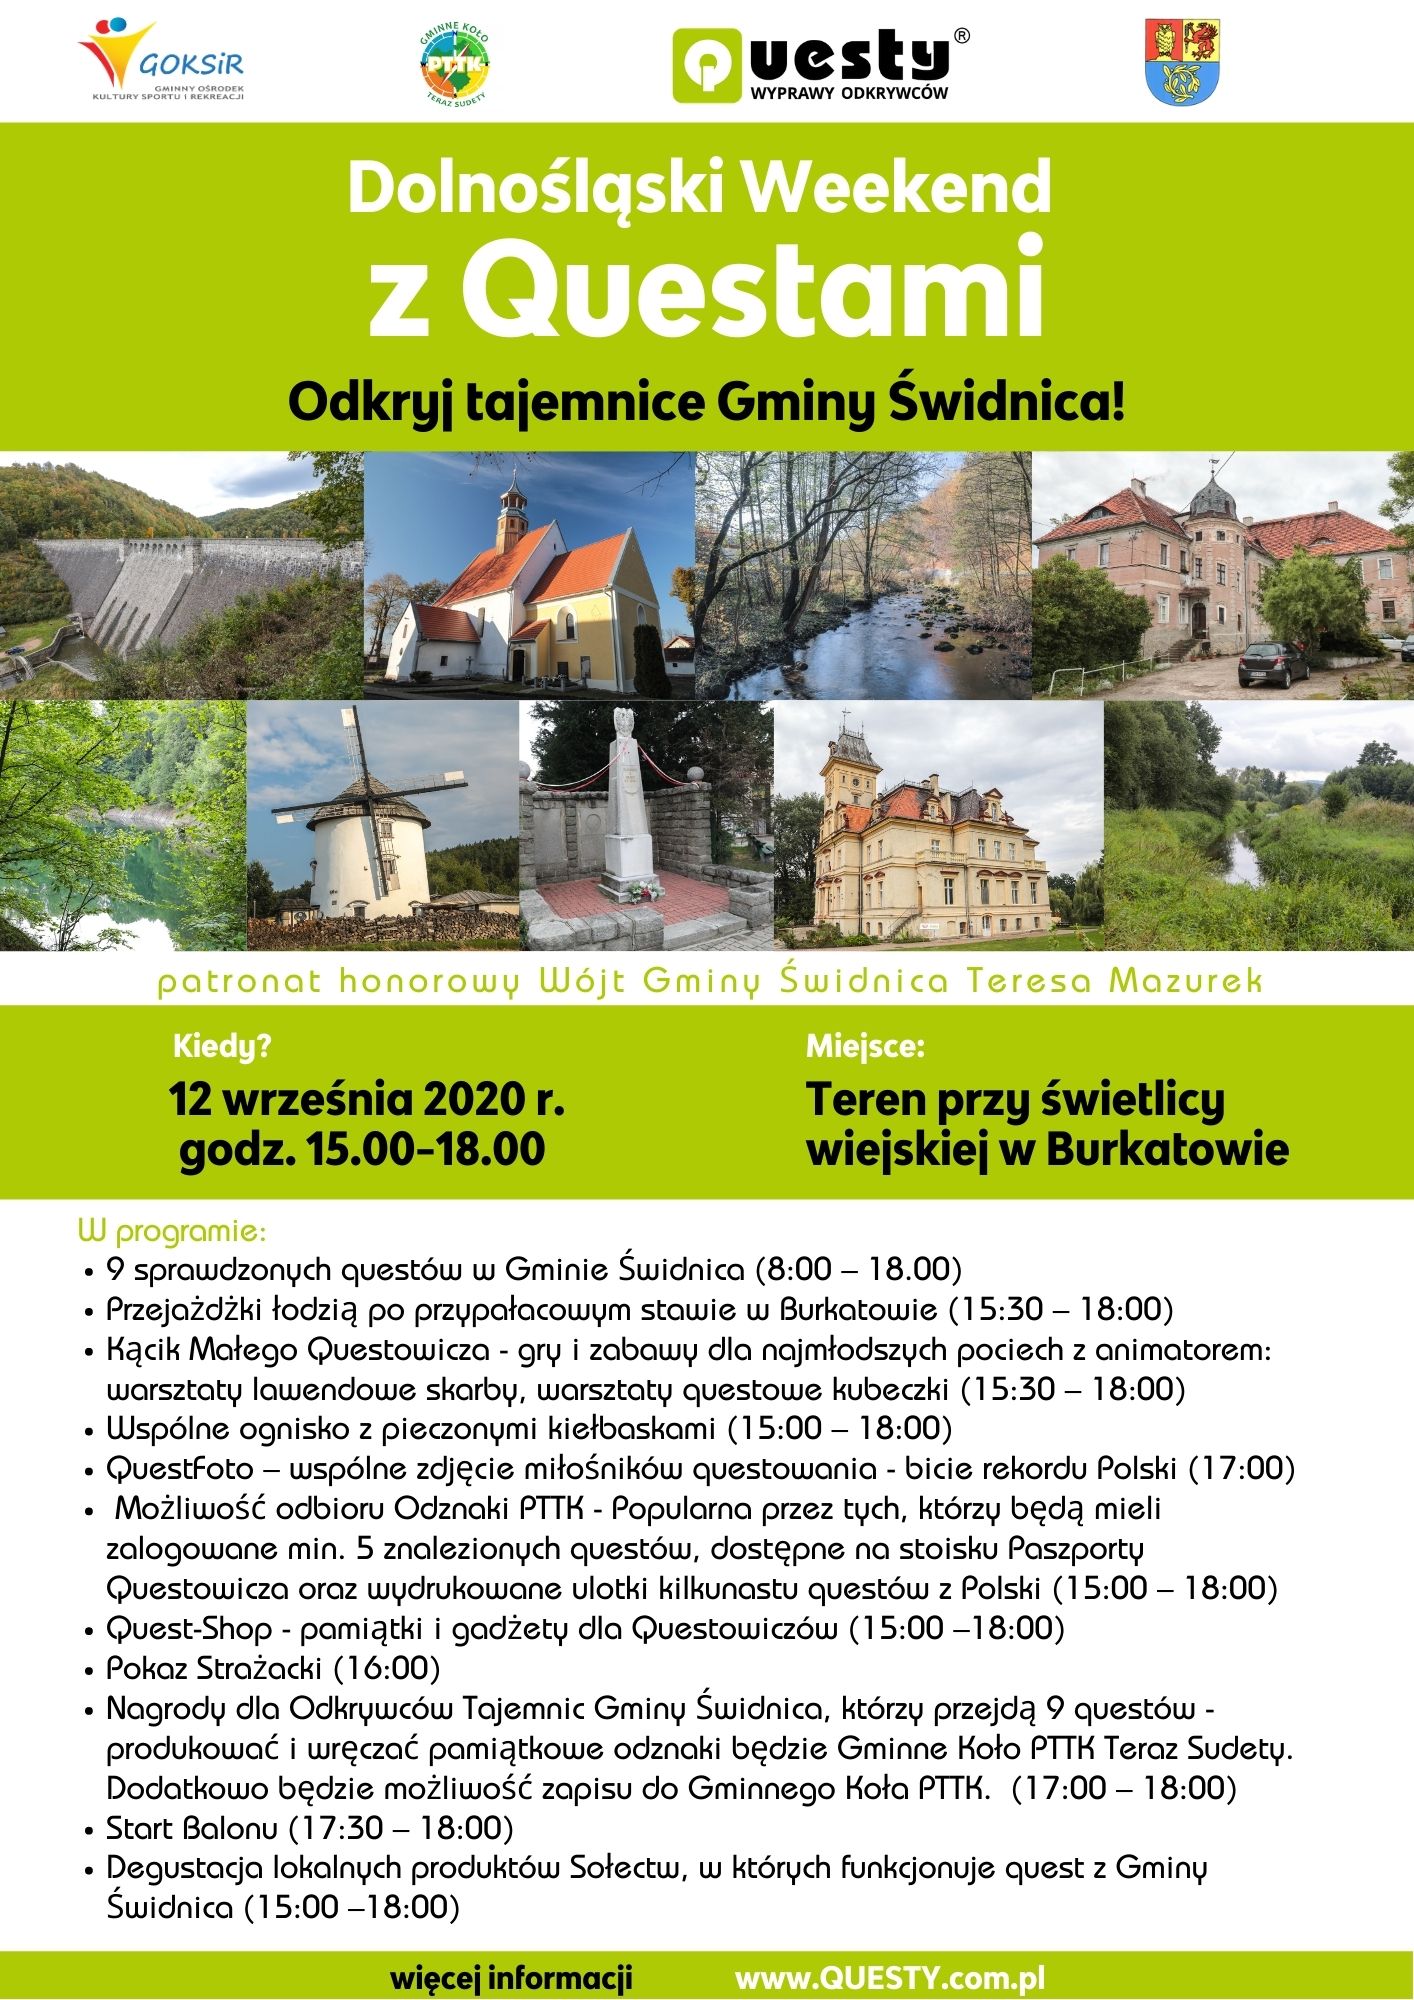 12 września - Dolnośląski Weekend z Questami